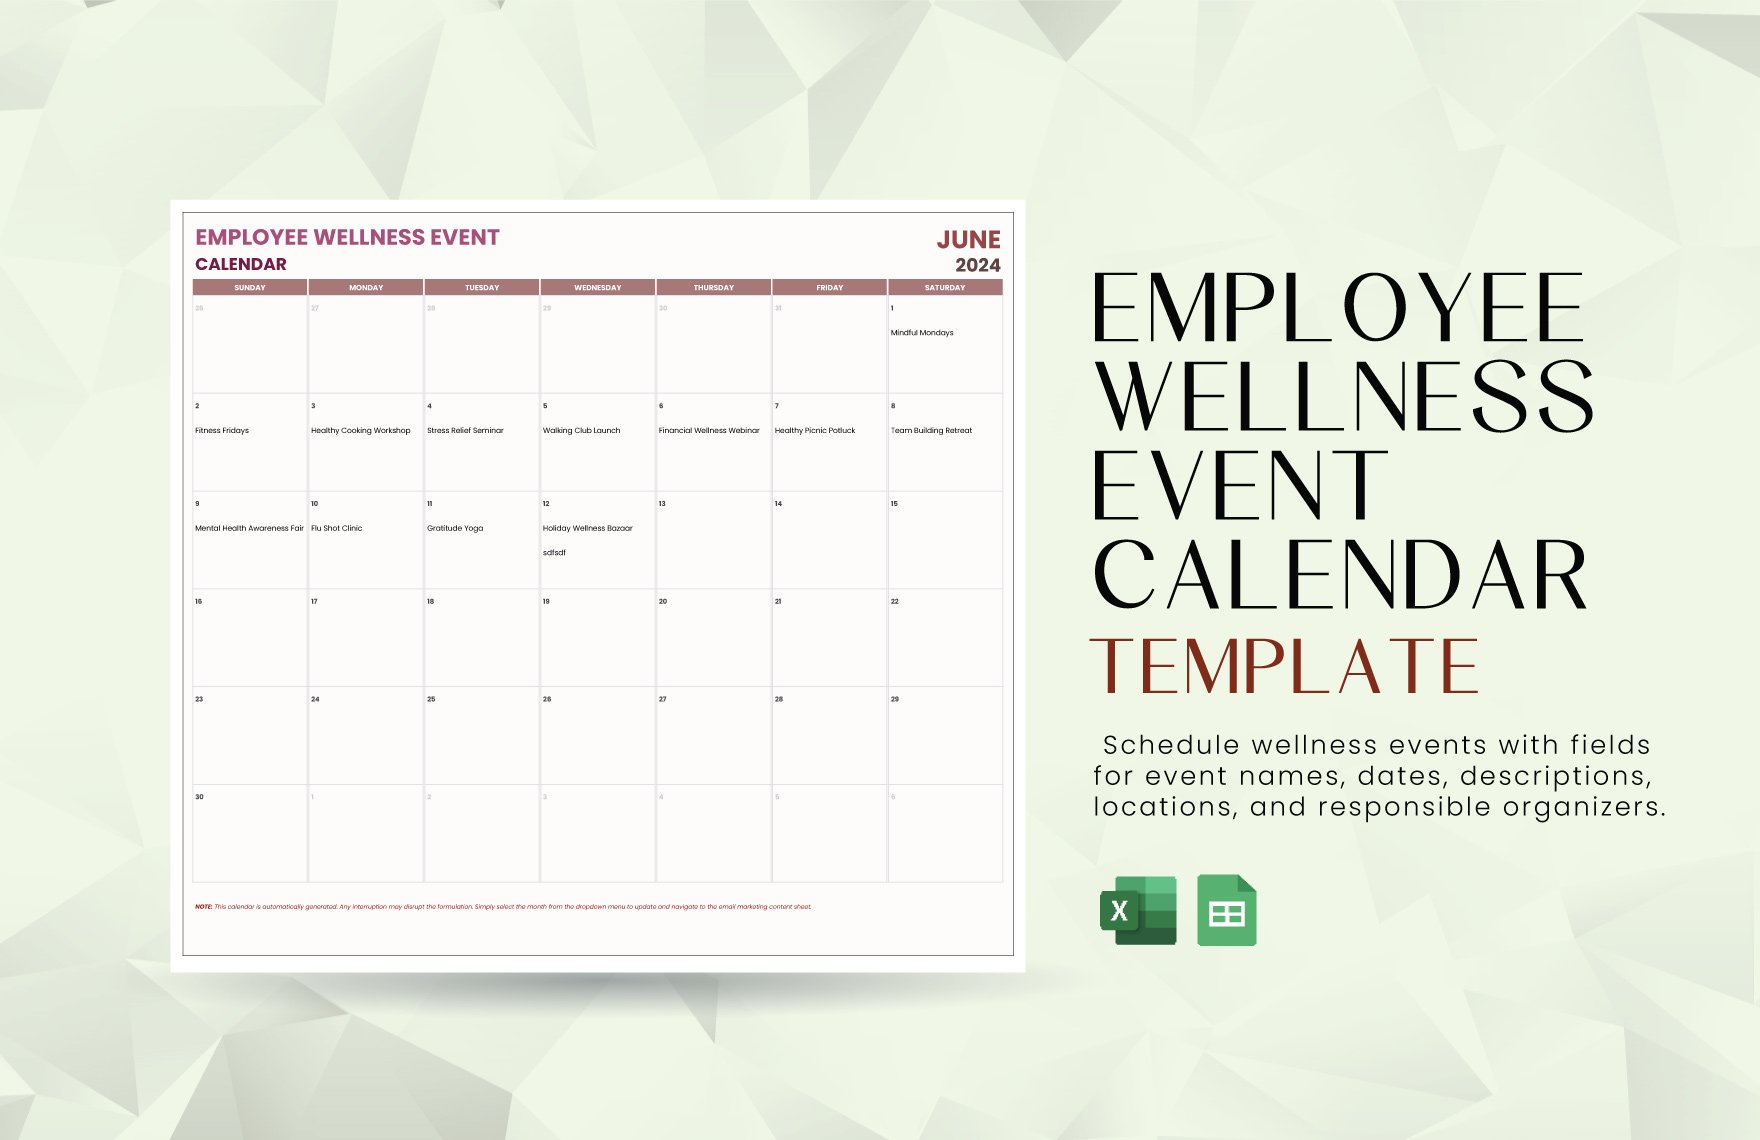 Employee Wellness Event Calendar Template in Excel, Google Sheets